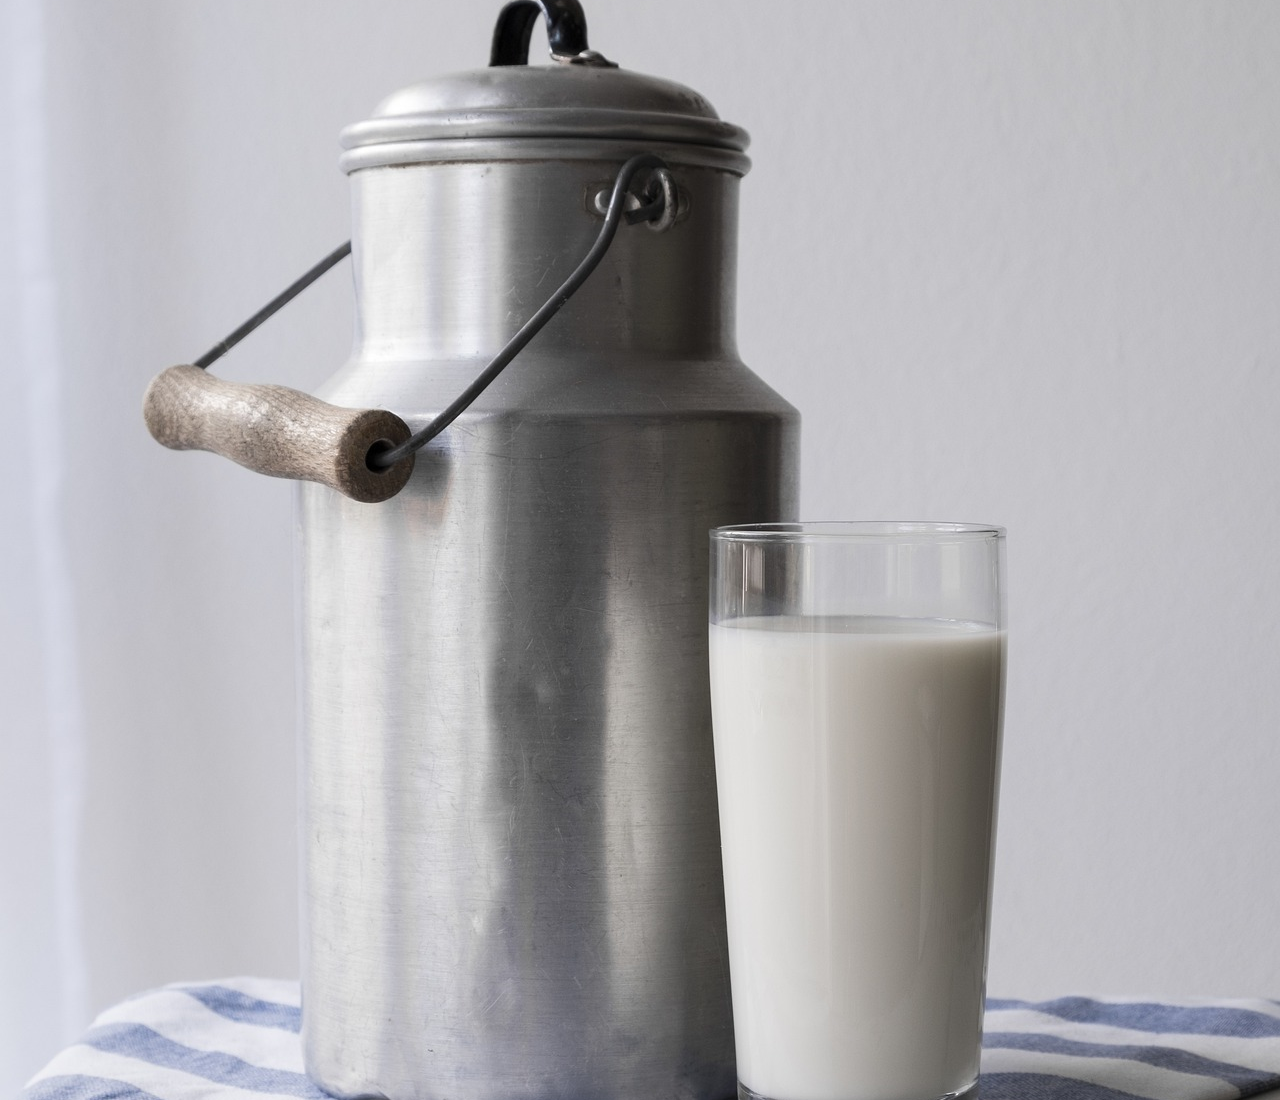 Dacă mai ai un ulcior vechi de lapte pe undeva prin casă, avem un pont grozav pentru tine despre cum să îl folosești în alte moduri!